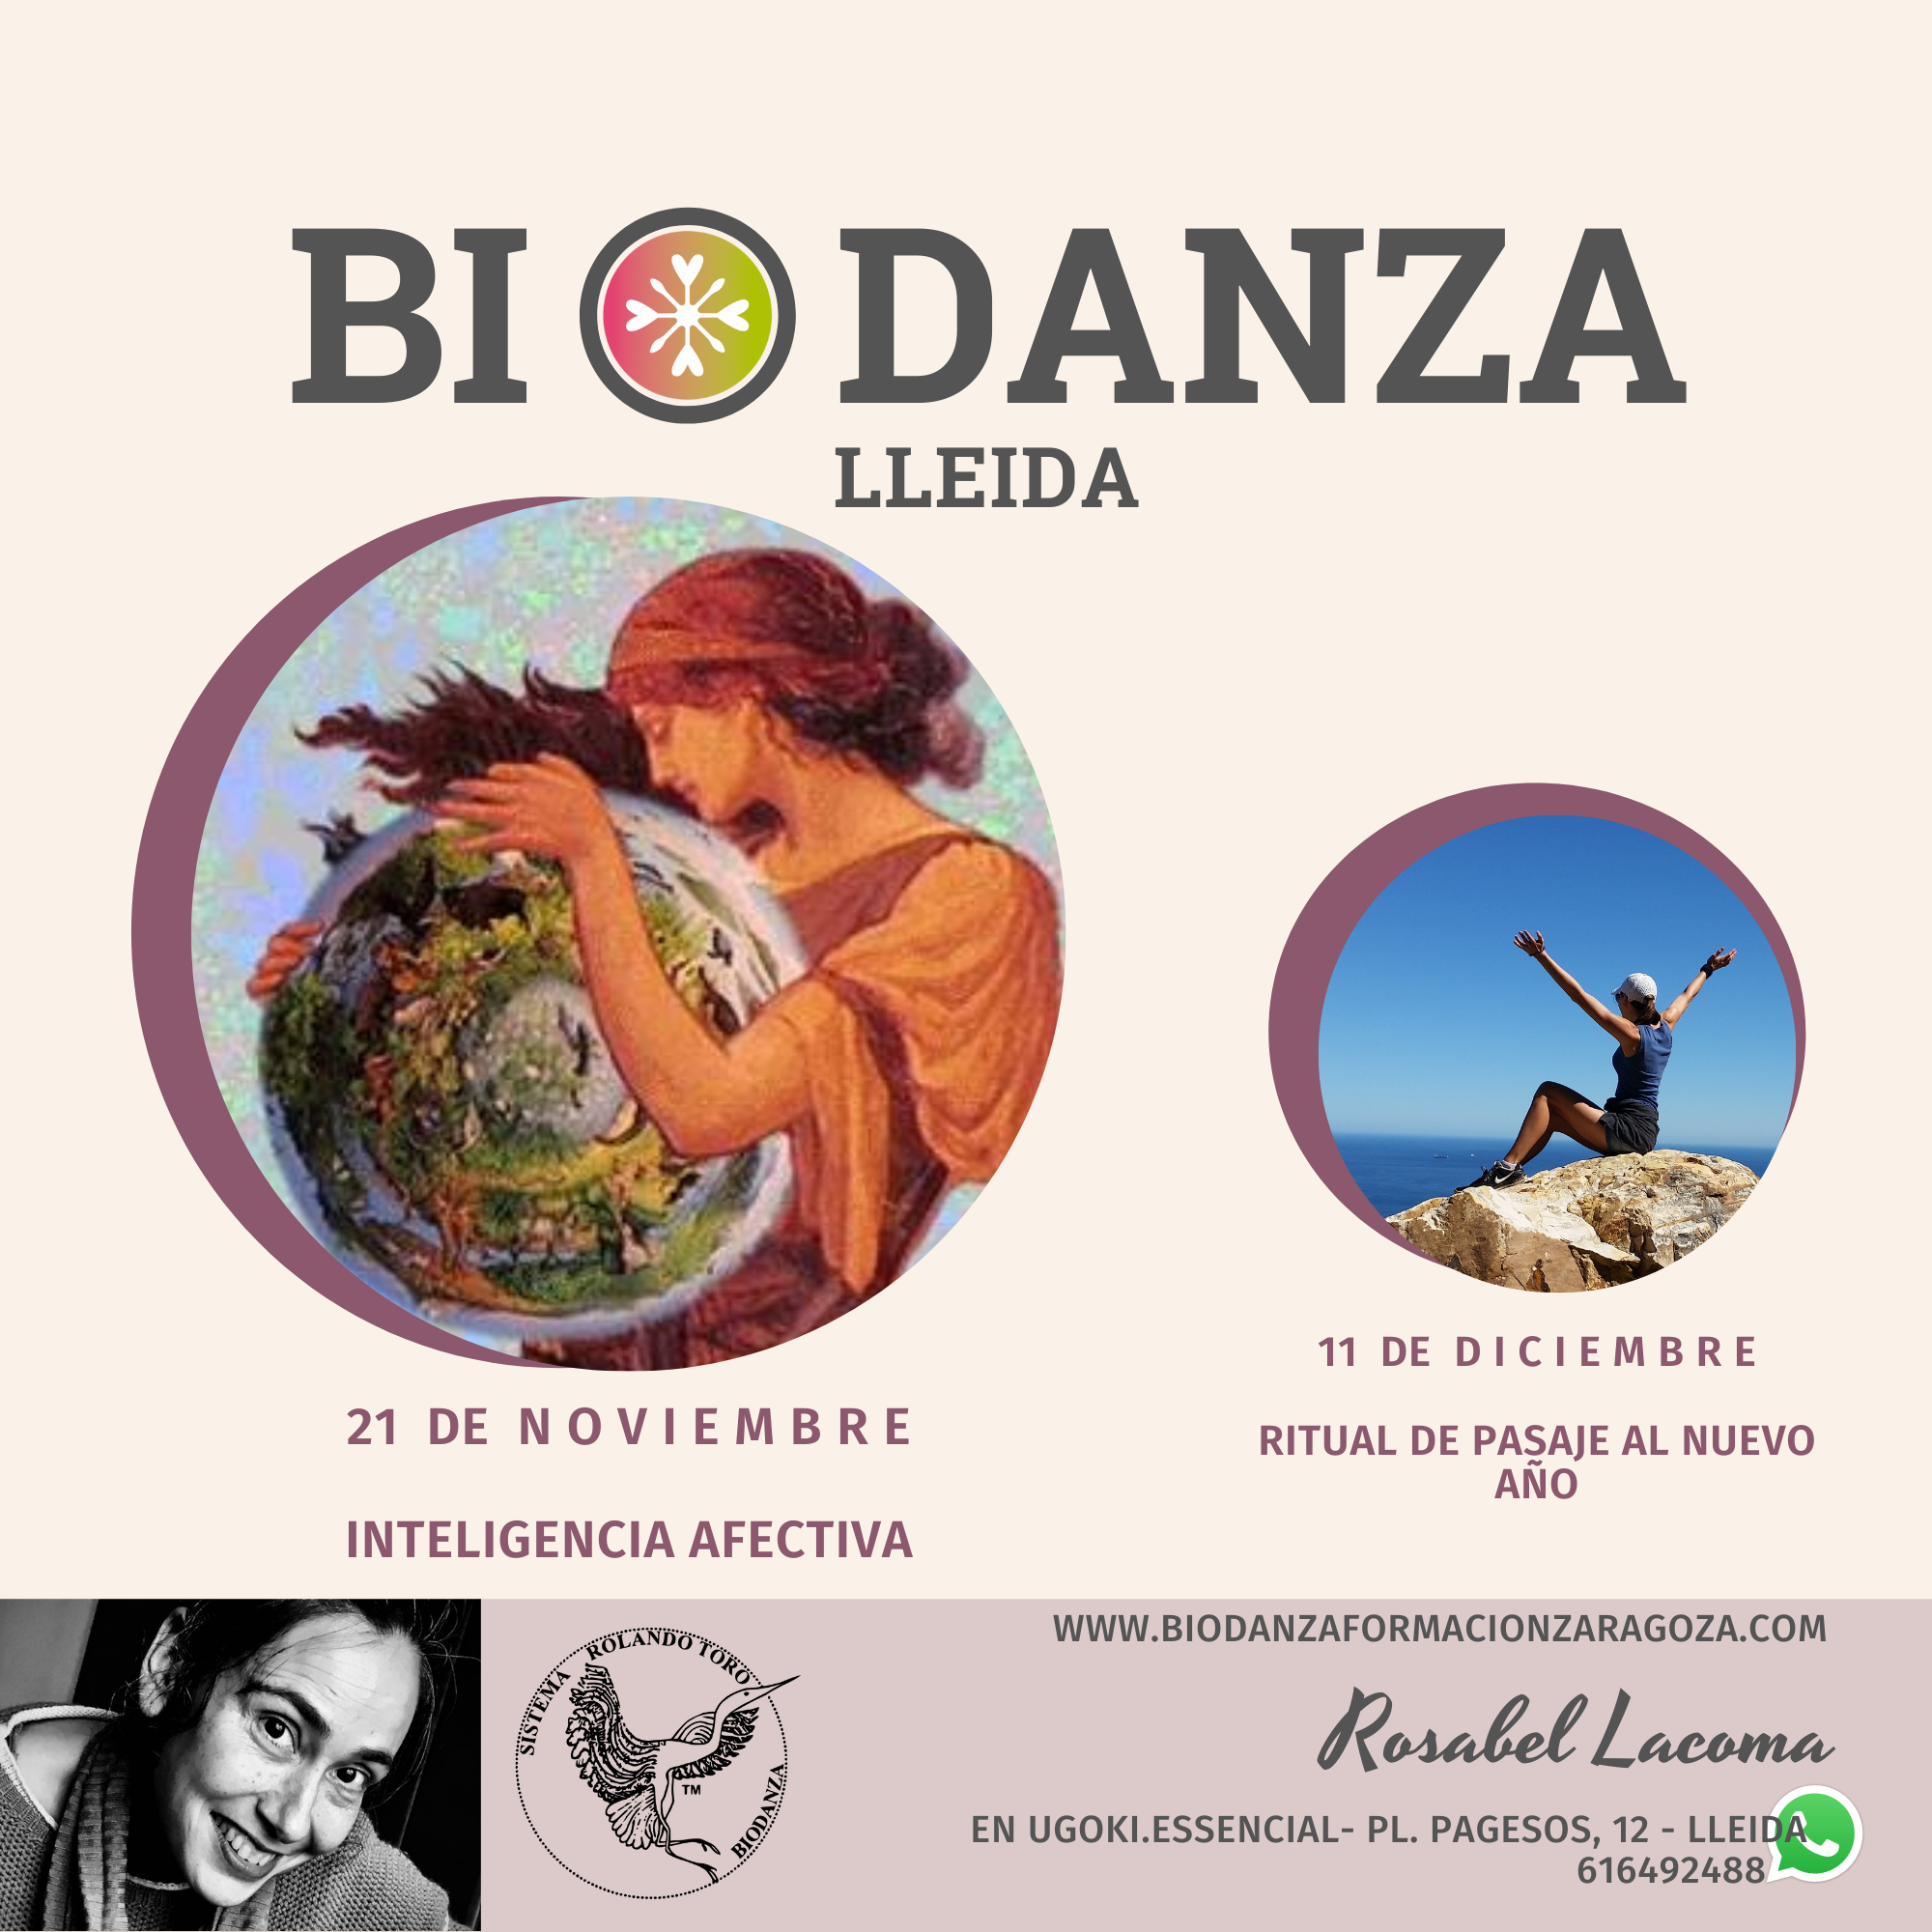 Biodanza Lleida